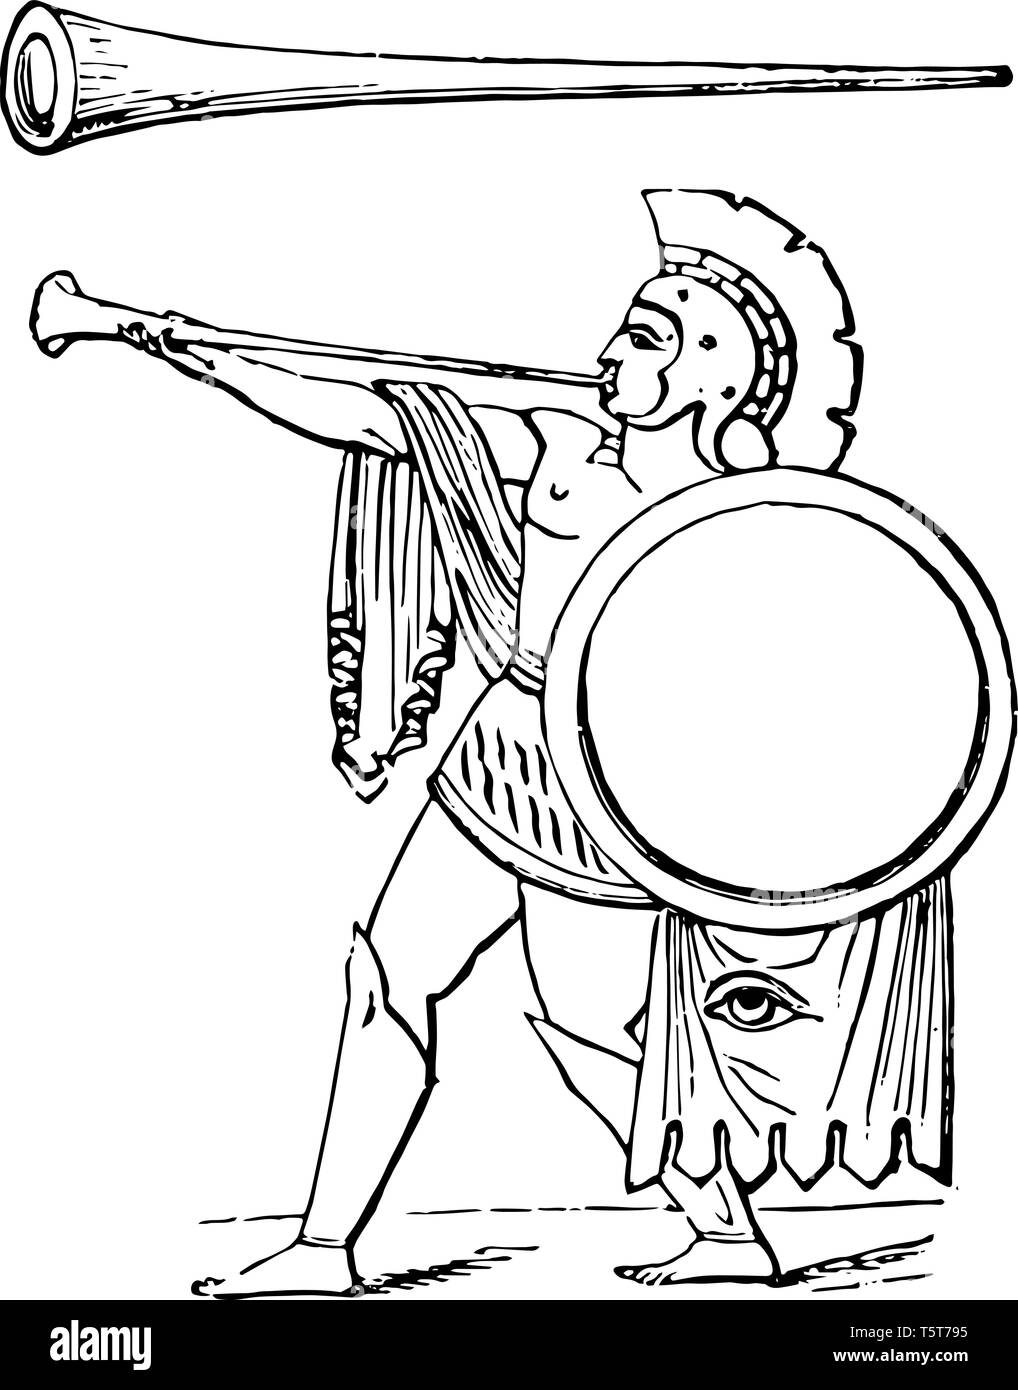 Tuba ist ein Bronze Trompete unterscheiden sich von der Cornu durch Gerade, vintage Strichzeichnung oder Gravur Abbildung. Stock Vektor